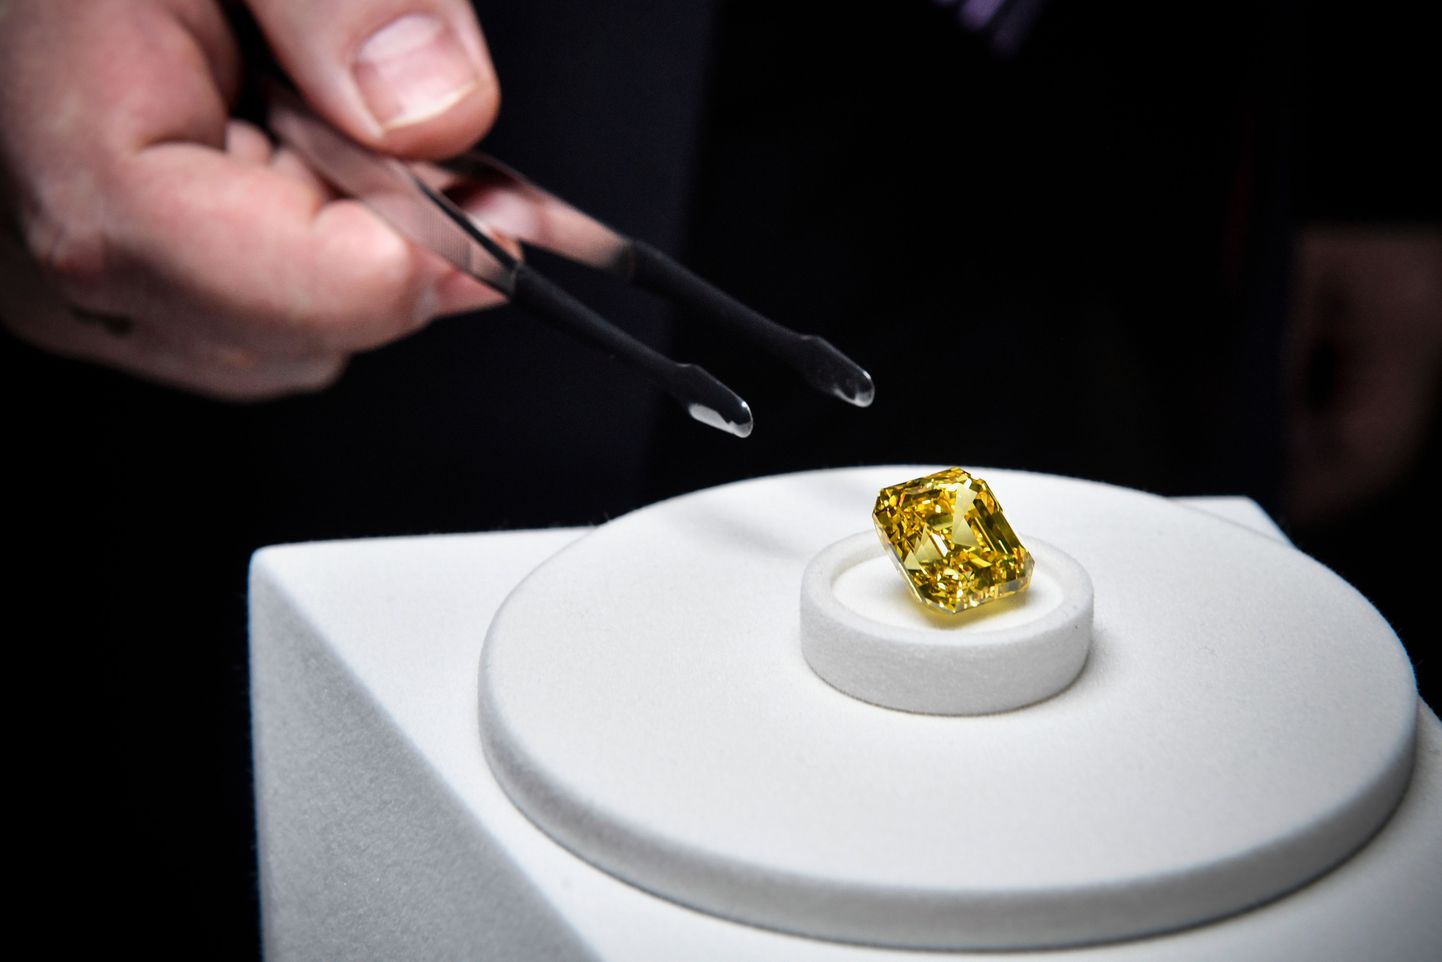 В конце прошлого года желтый бриллиант, получивший название "Жар-птица" (Firebird) массой 20,69 карата был продан известному мировому бренду Graff Diamonds.